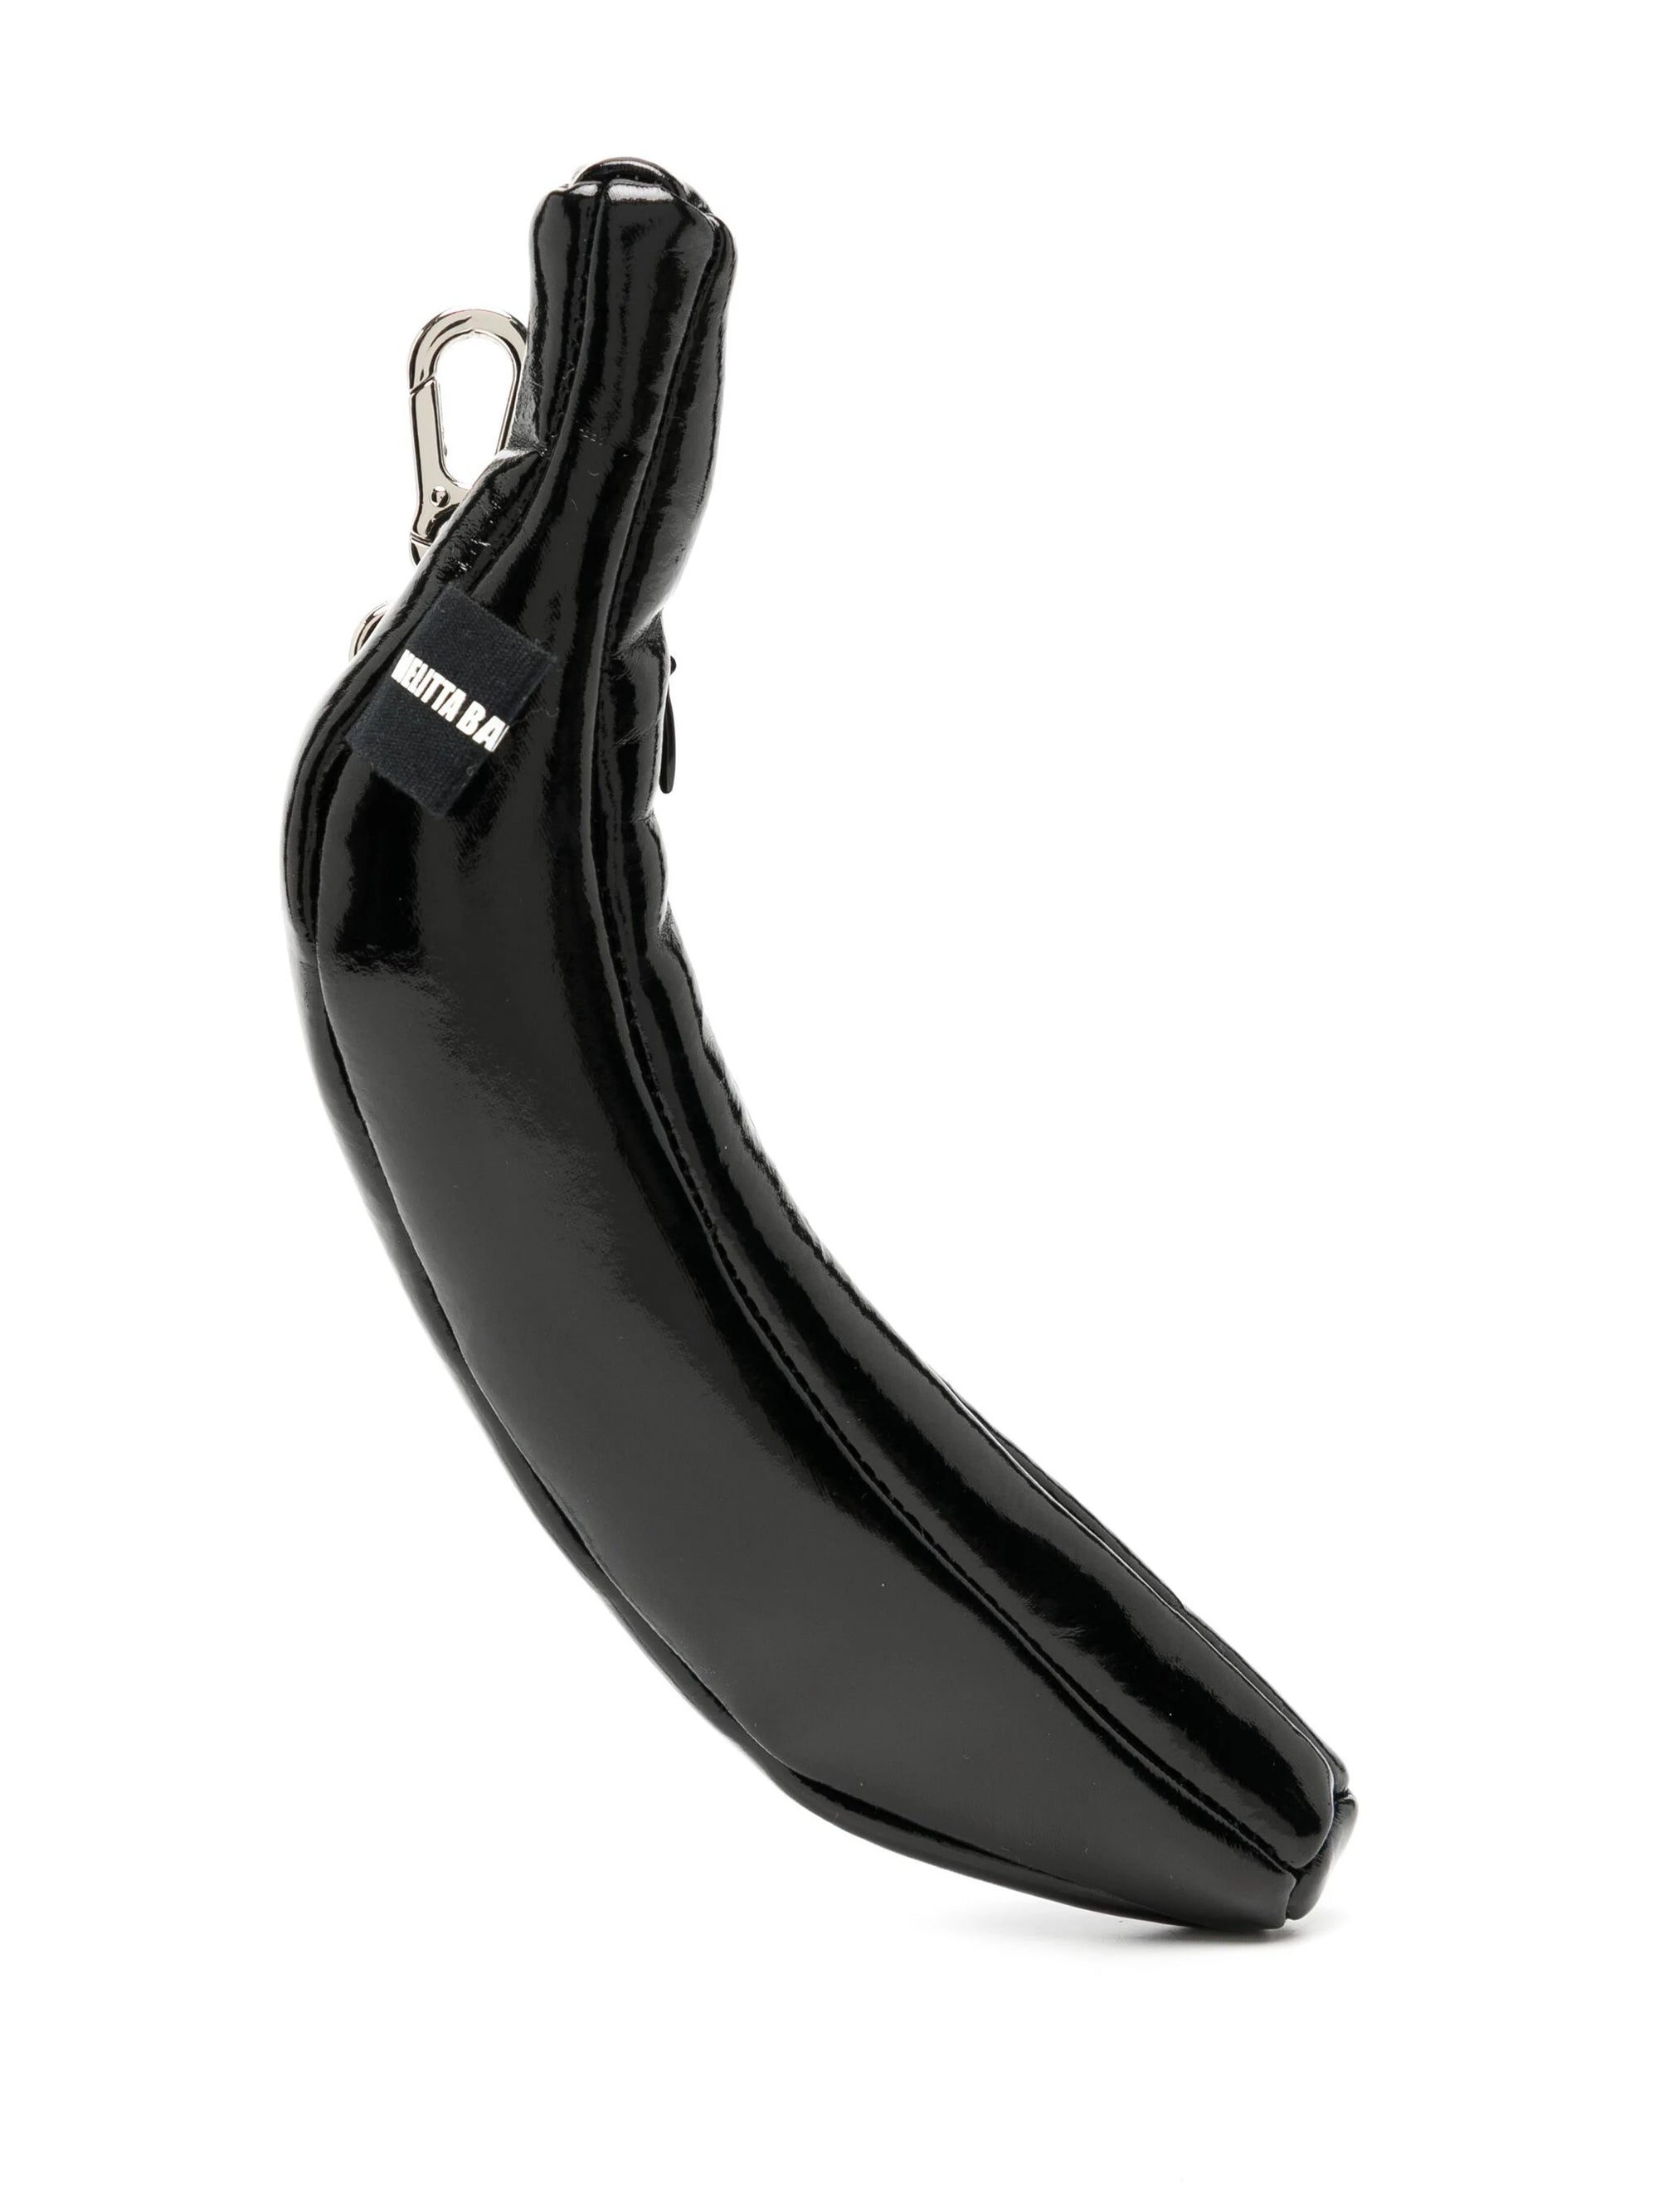 black-glossy-banana-shaped-bag-with-silver-key-ring-and-logo-tag